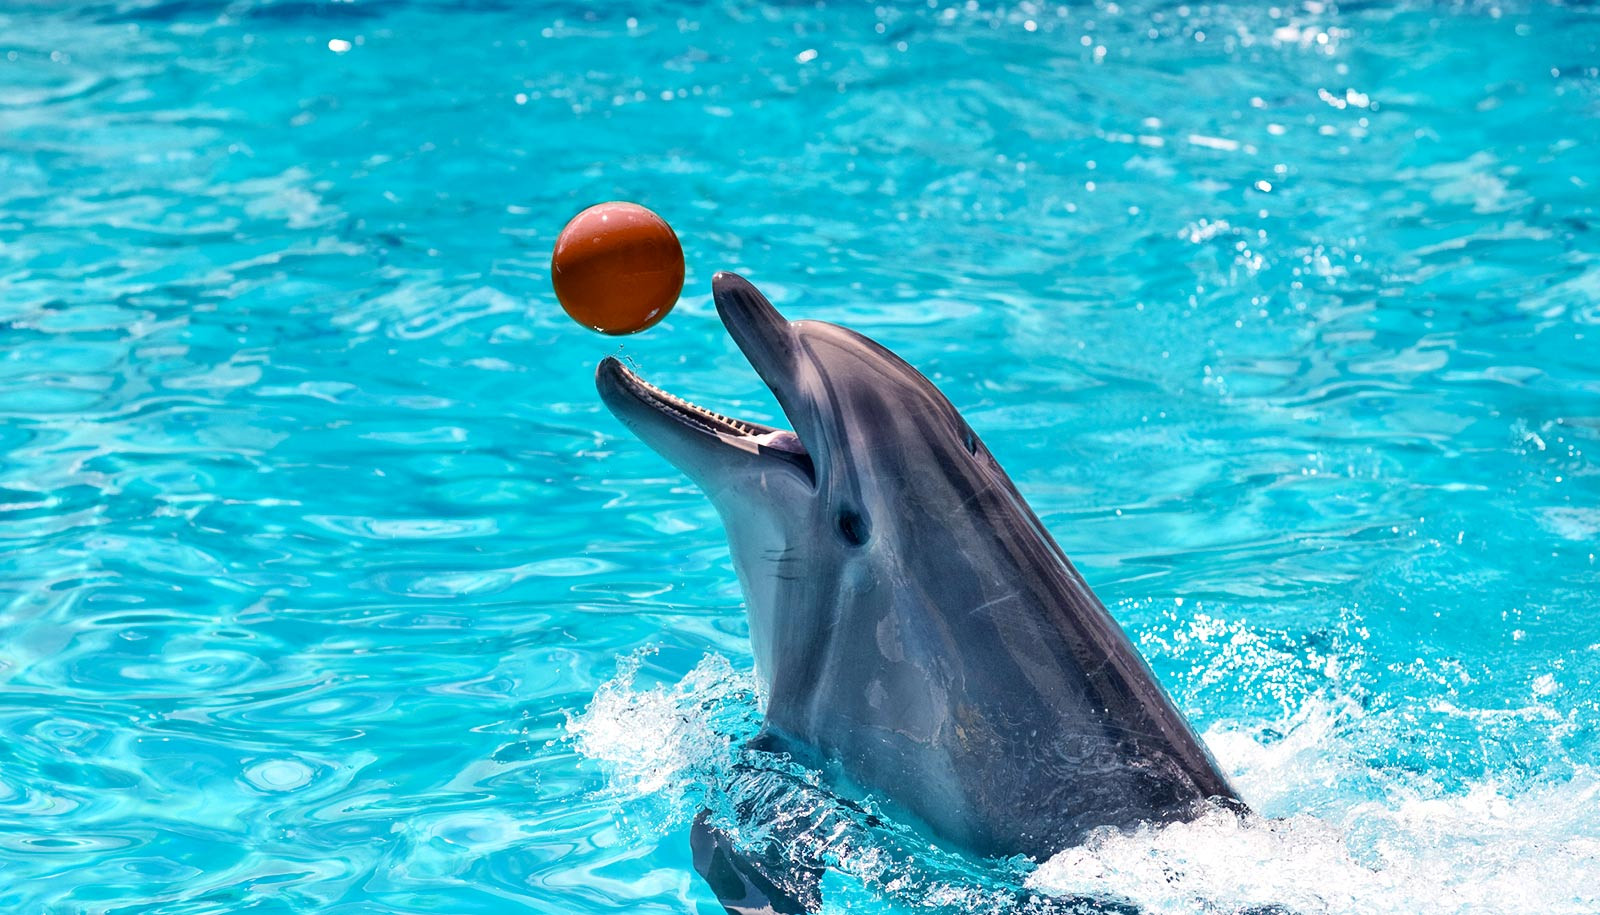 Μήνυση στο Αττικό Ζωολογικό Πάρκο για εγκληματική συμπεριφορά στα δελφίνια